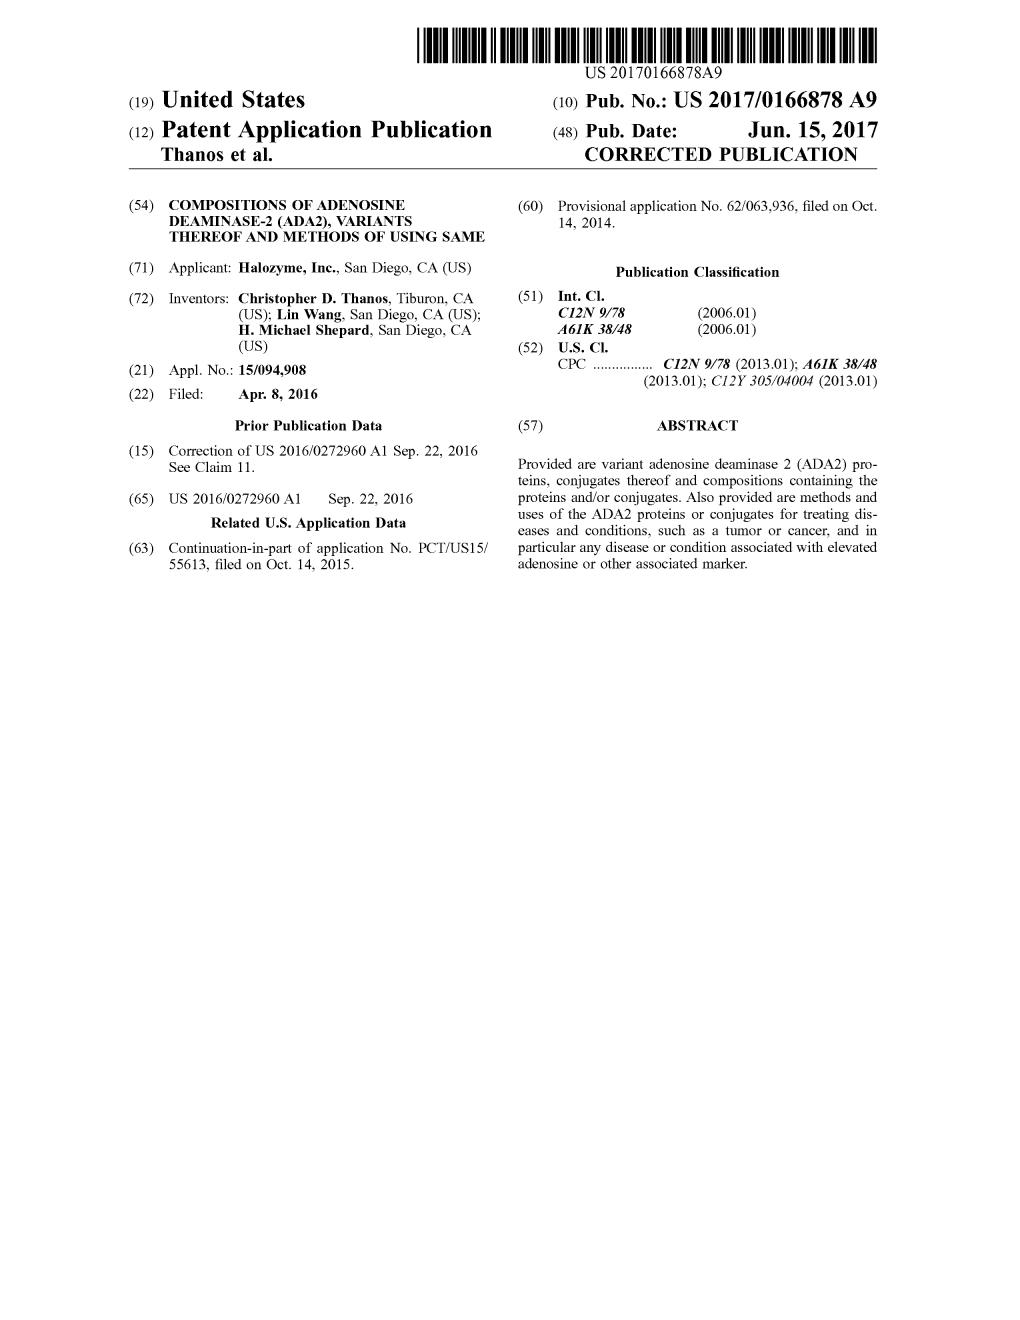 US 2017/0166878 A9 (12) Patent Application Publication (48) Pub